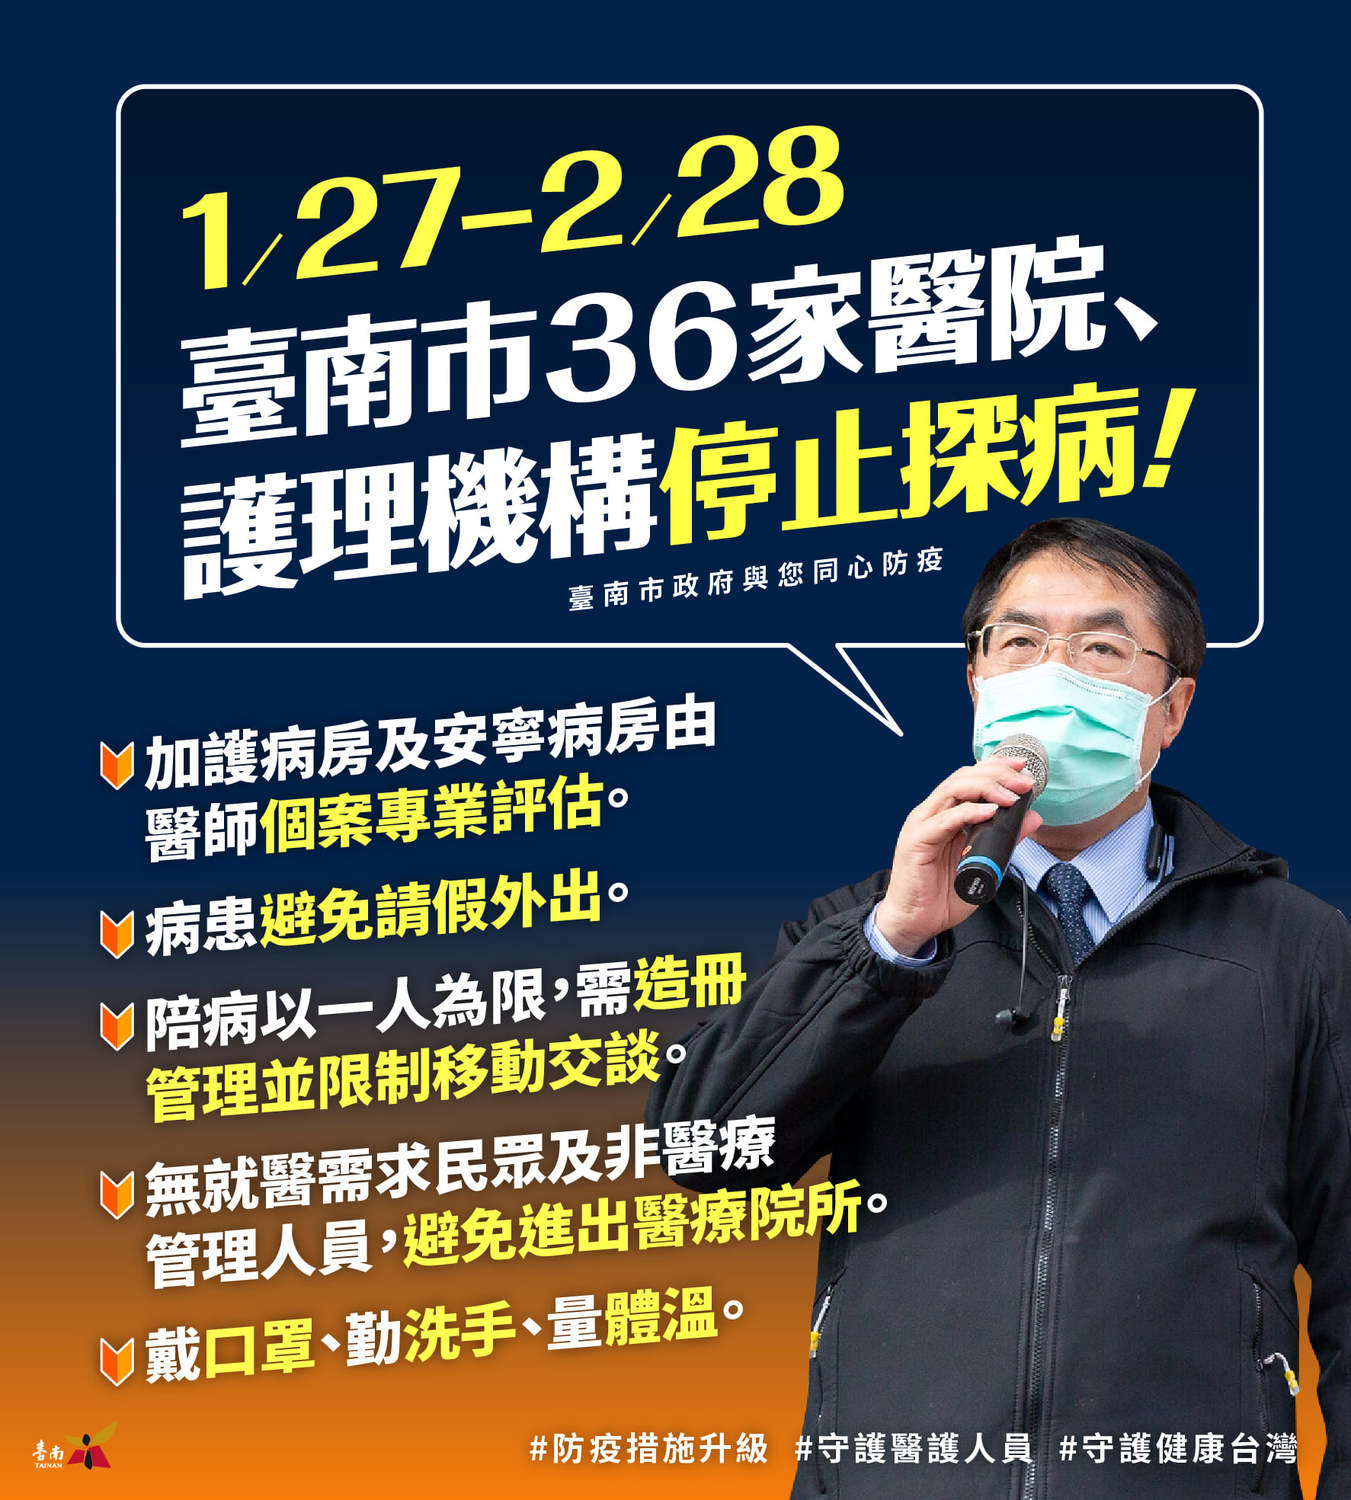 防堵疫情 台南市36家醫院 今起禁止探病